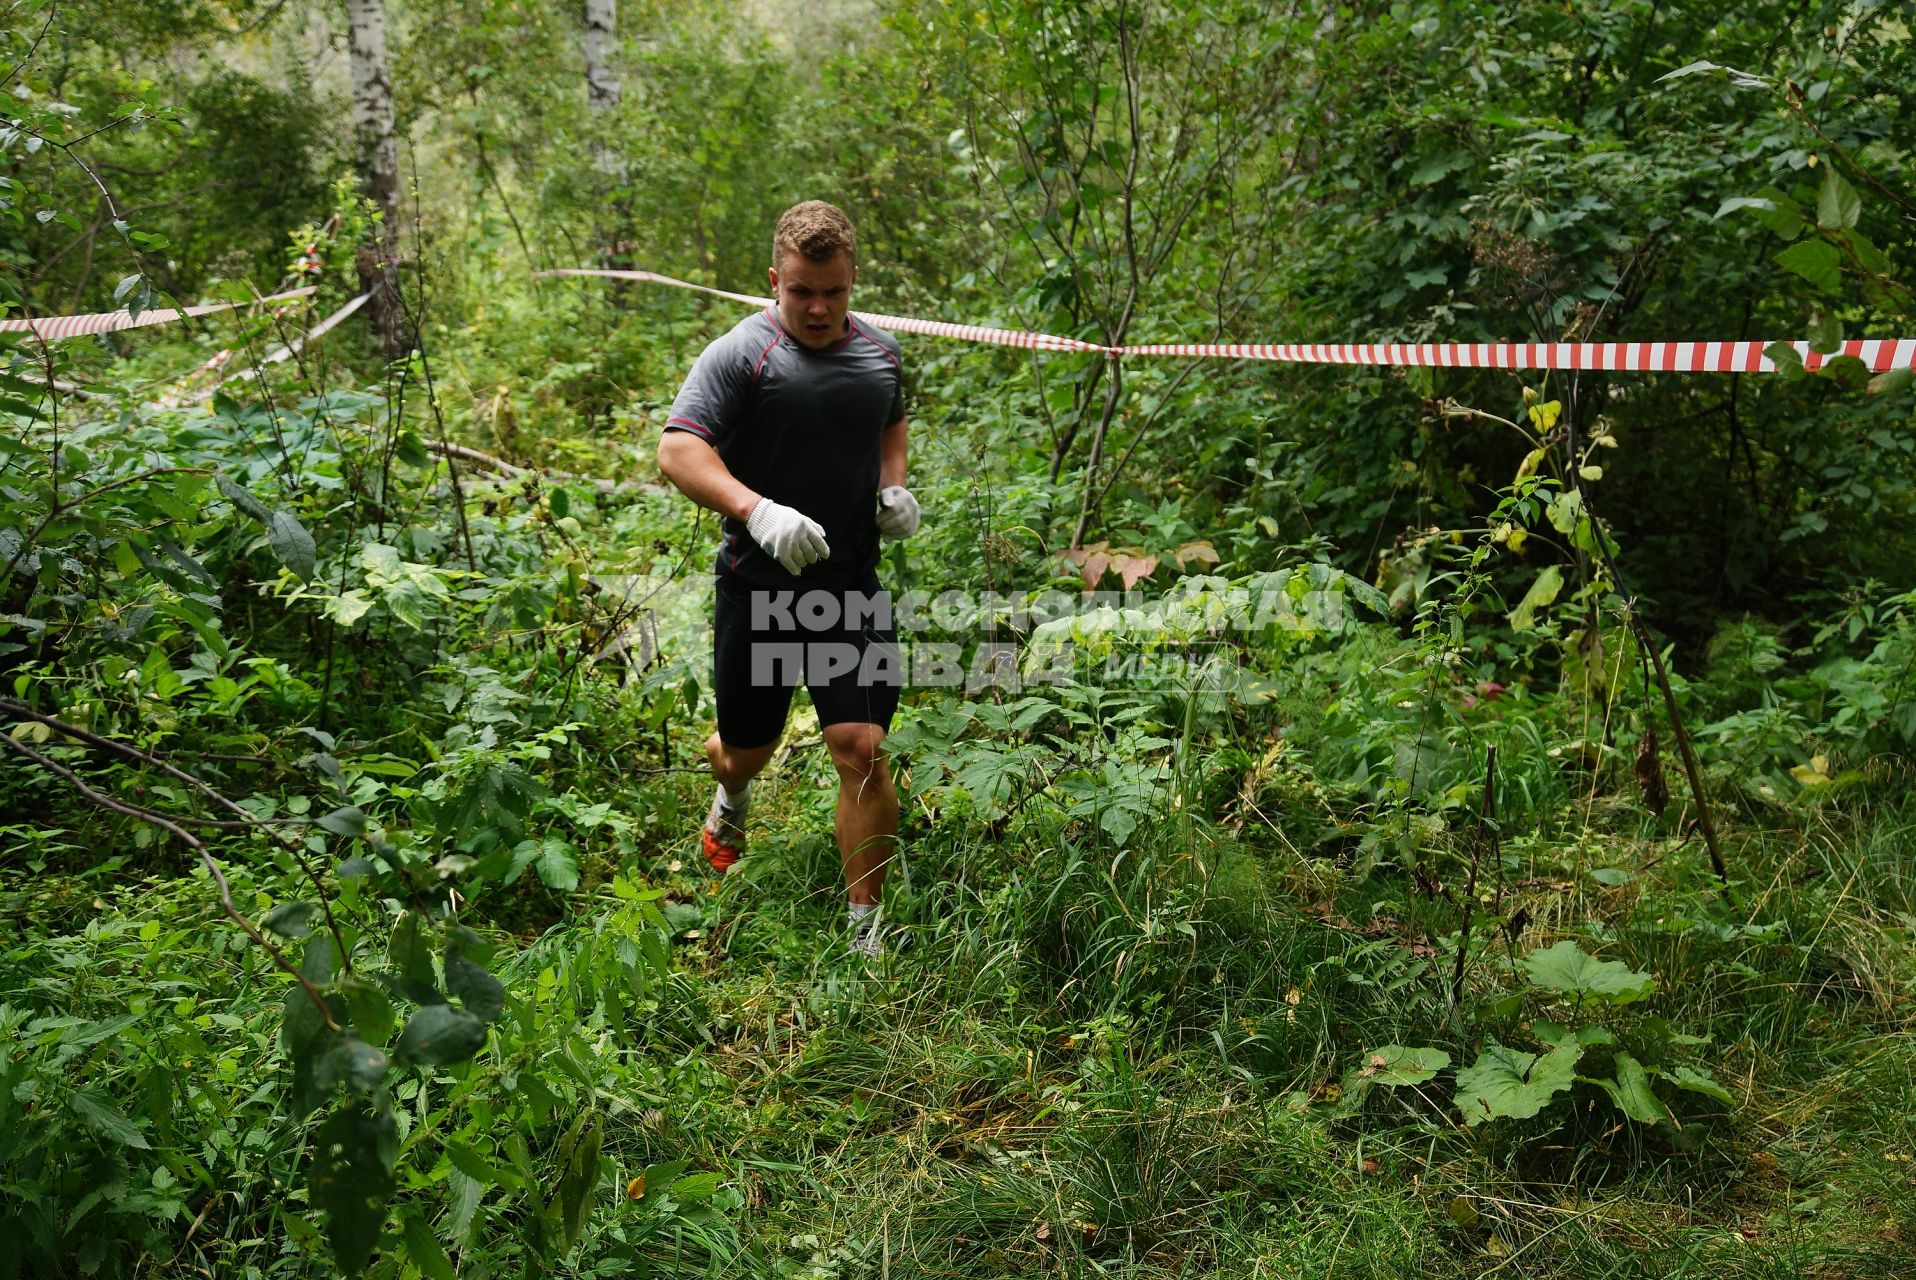 Участники грязных гонок Ural Dirty Race 2014 под Екатеринбургом  бегут по лесу